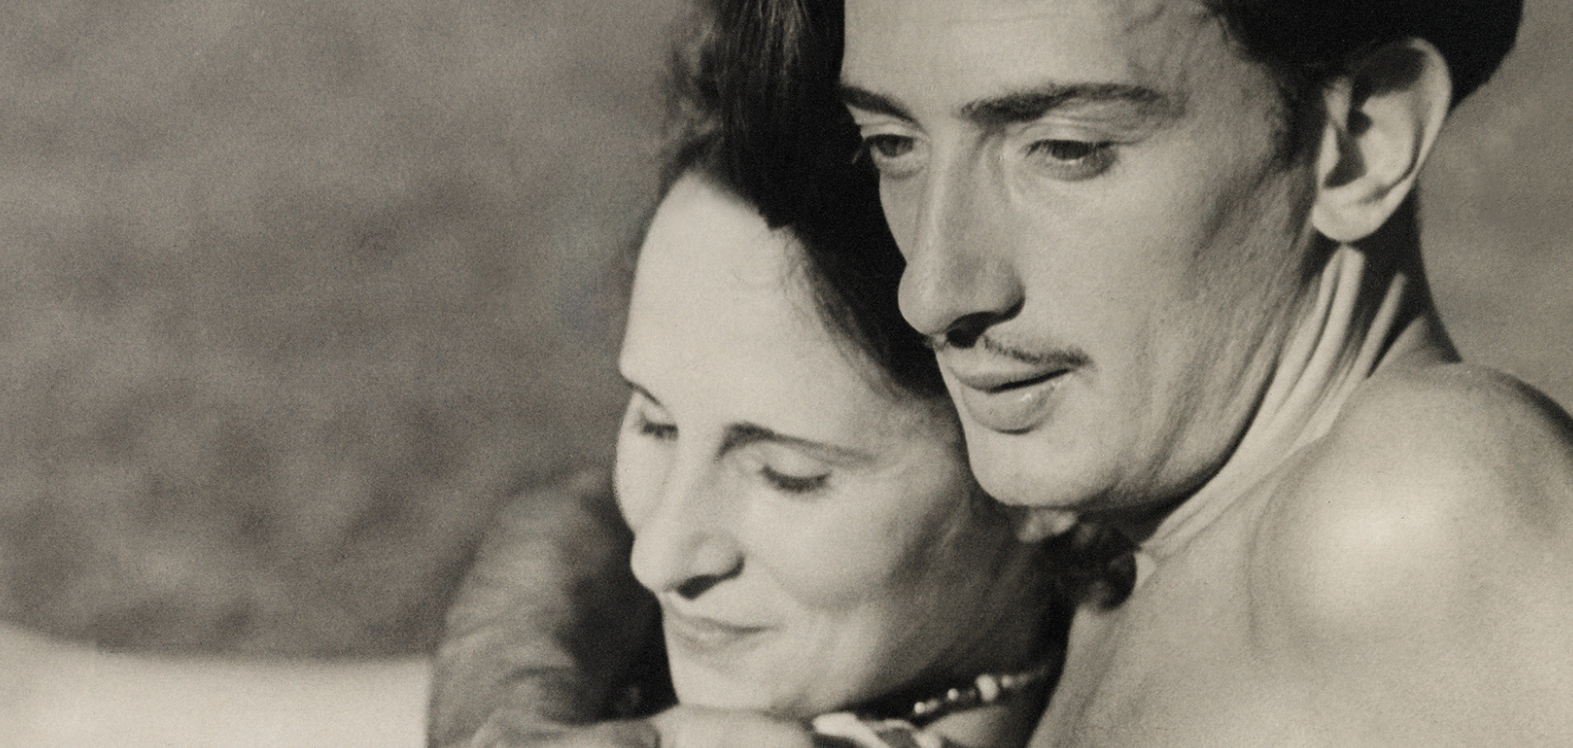 La trepidante vida de Gala Dalí captada por fotógrafos como Man Ray y Cecil Beaton